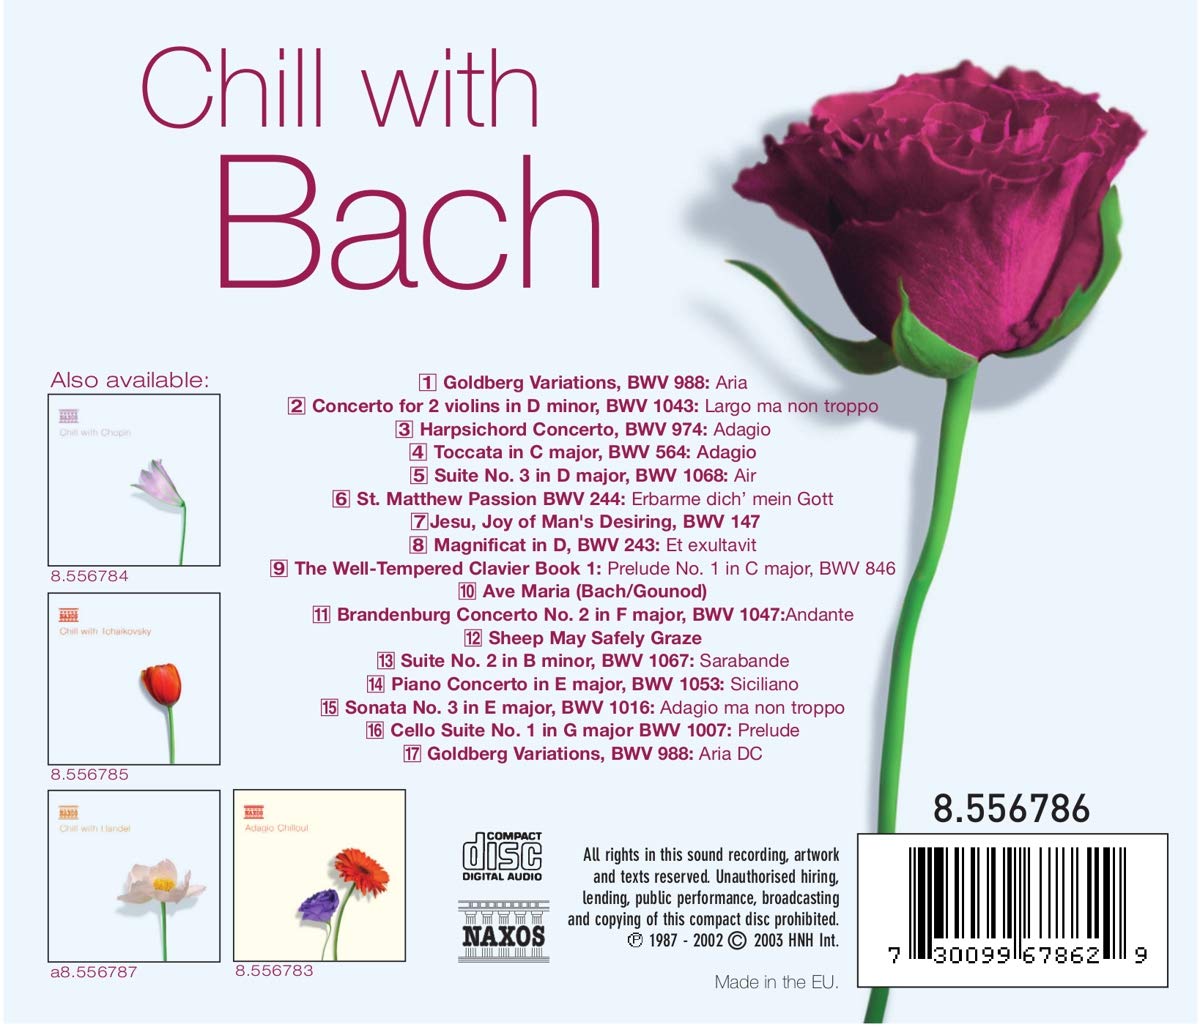 바흐 컴필레이션 - 칠 위드 바흐 (Chill With Bach) 